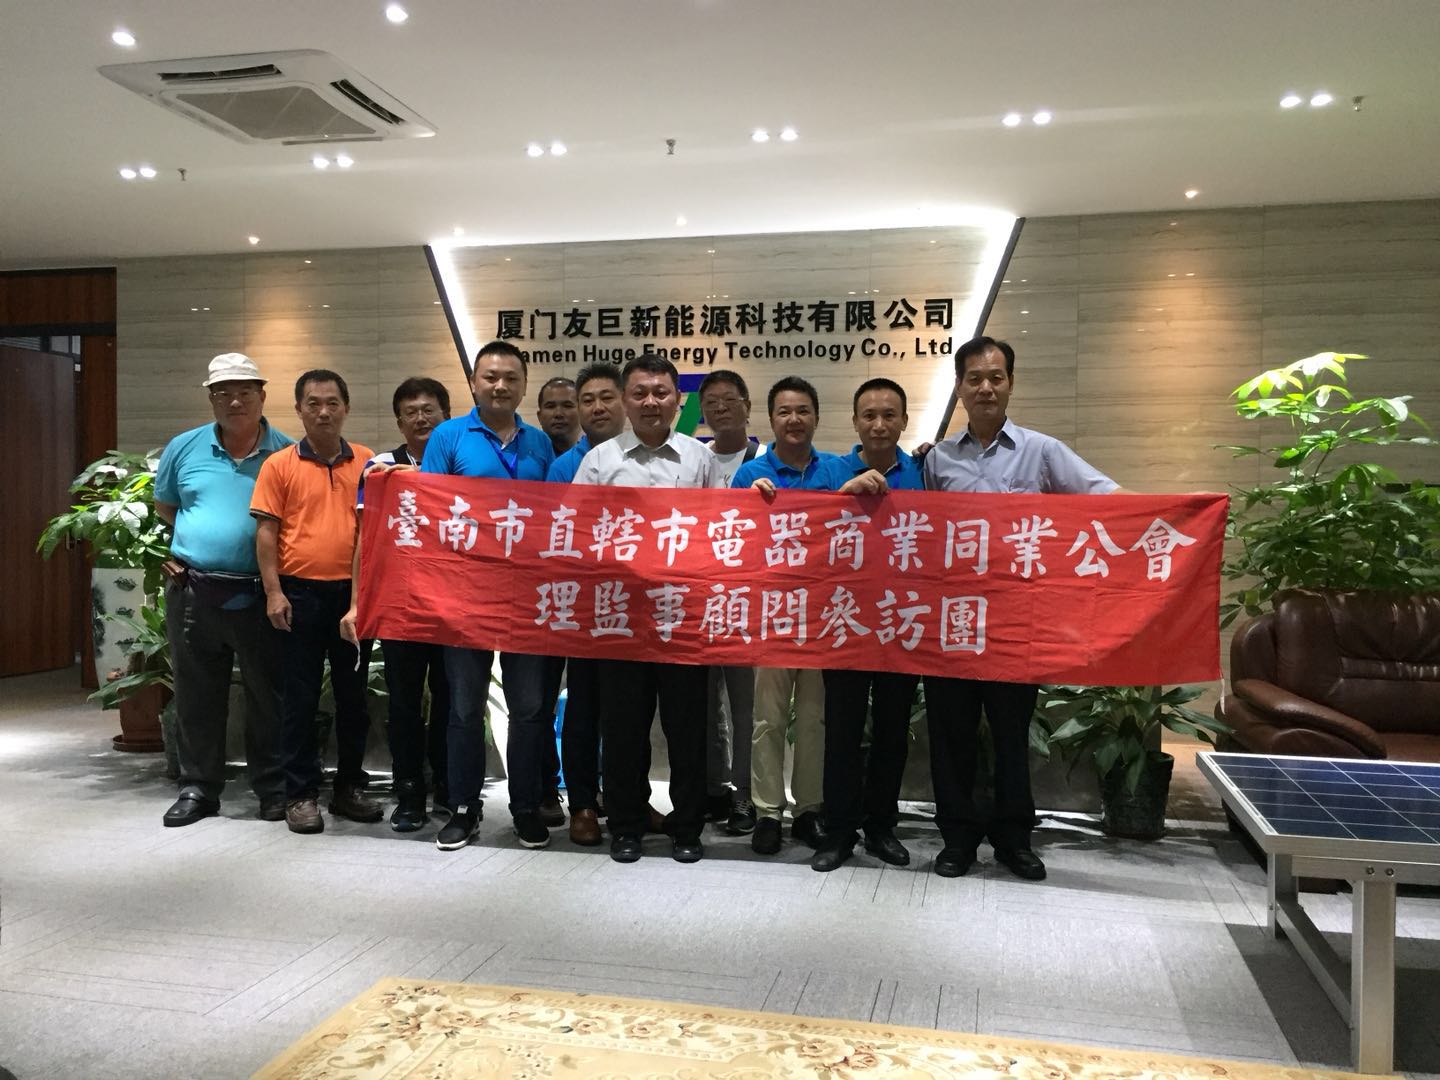 associação comercial de aparelhos elétricos de taiwan tainan e líderes do comitê de proteção ambiental de energia verde de taiwan